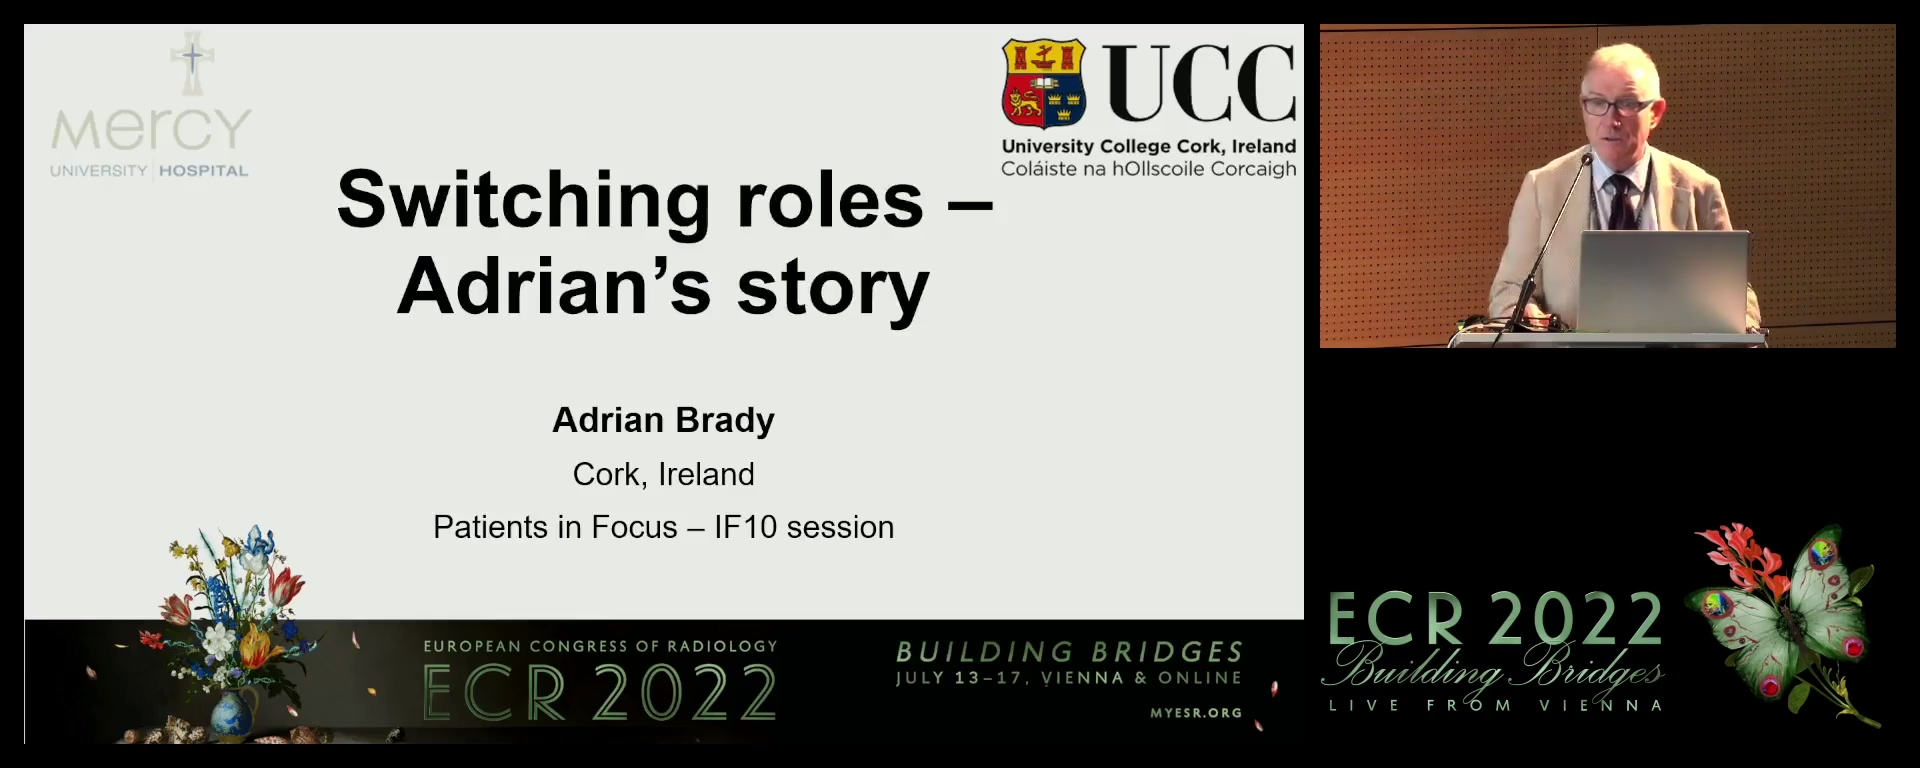 Adrian's story - Adrian Brady, Cork / IE